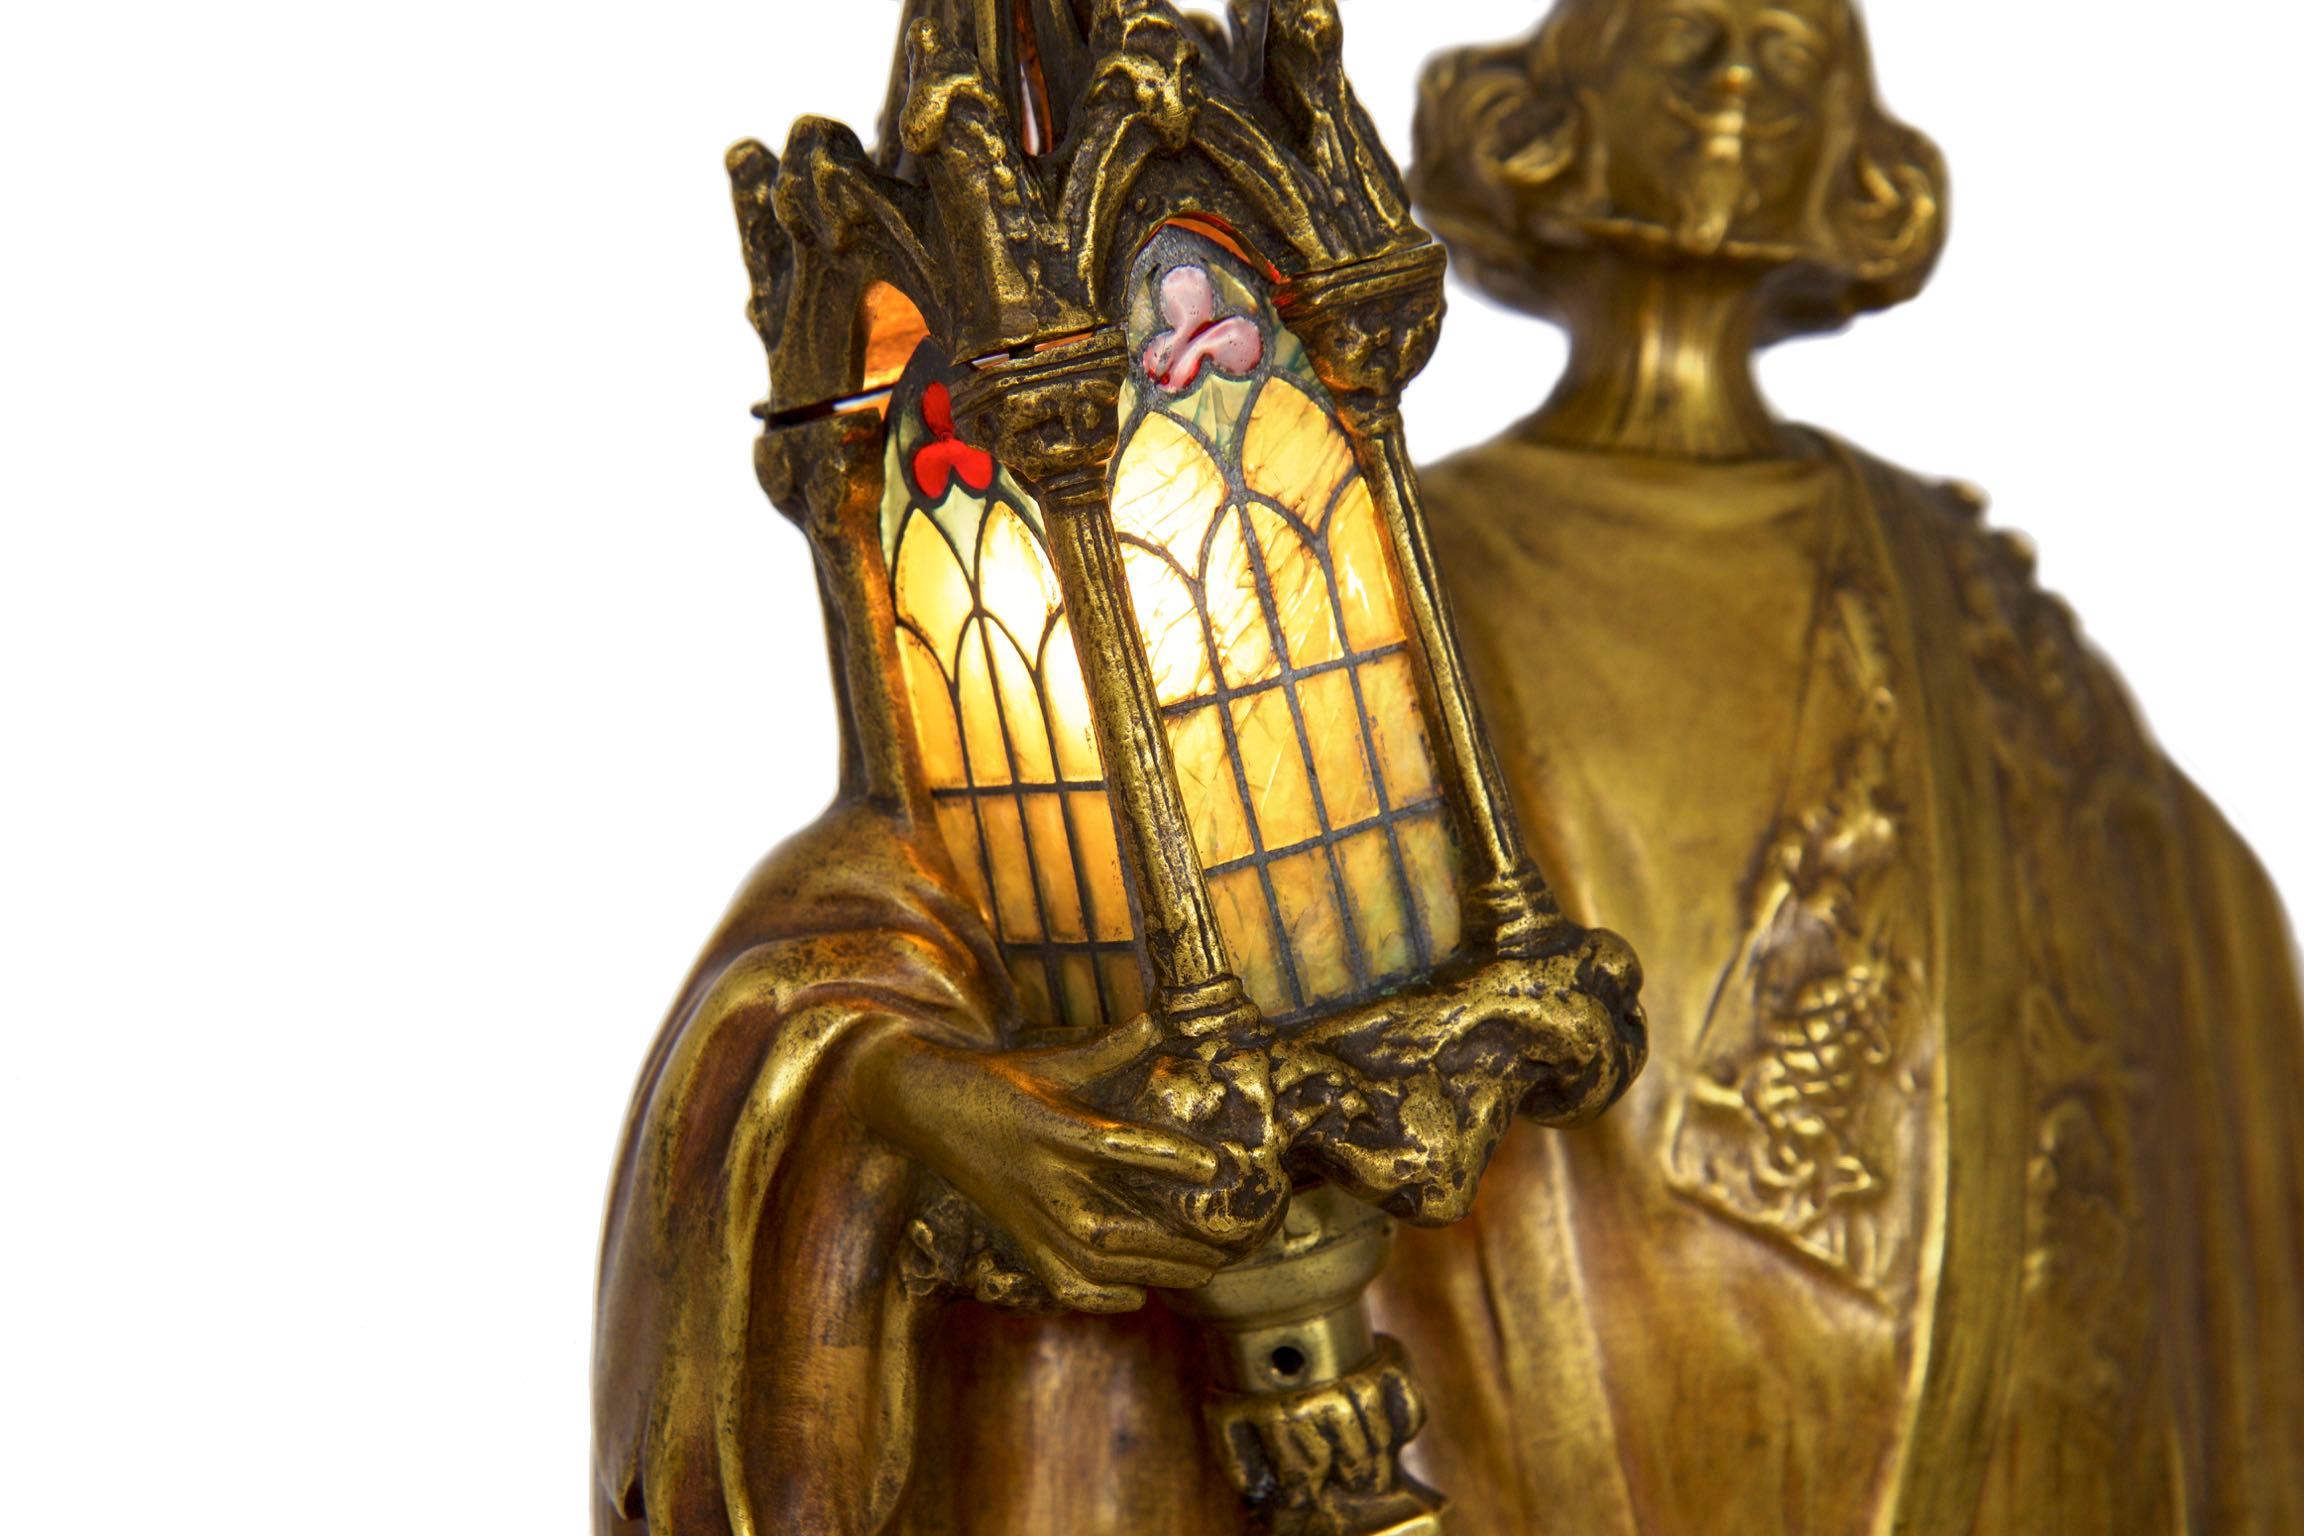 19th Century Léo Laporte-Blairsy French Art Nouveau Bronze Sculpture Antique Table Lamp